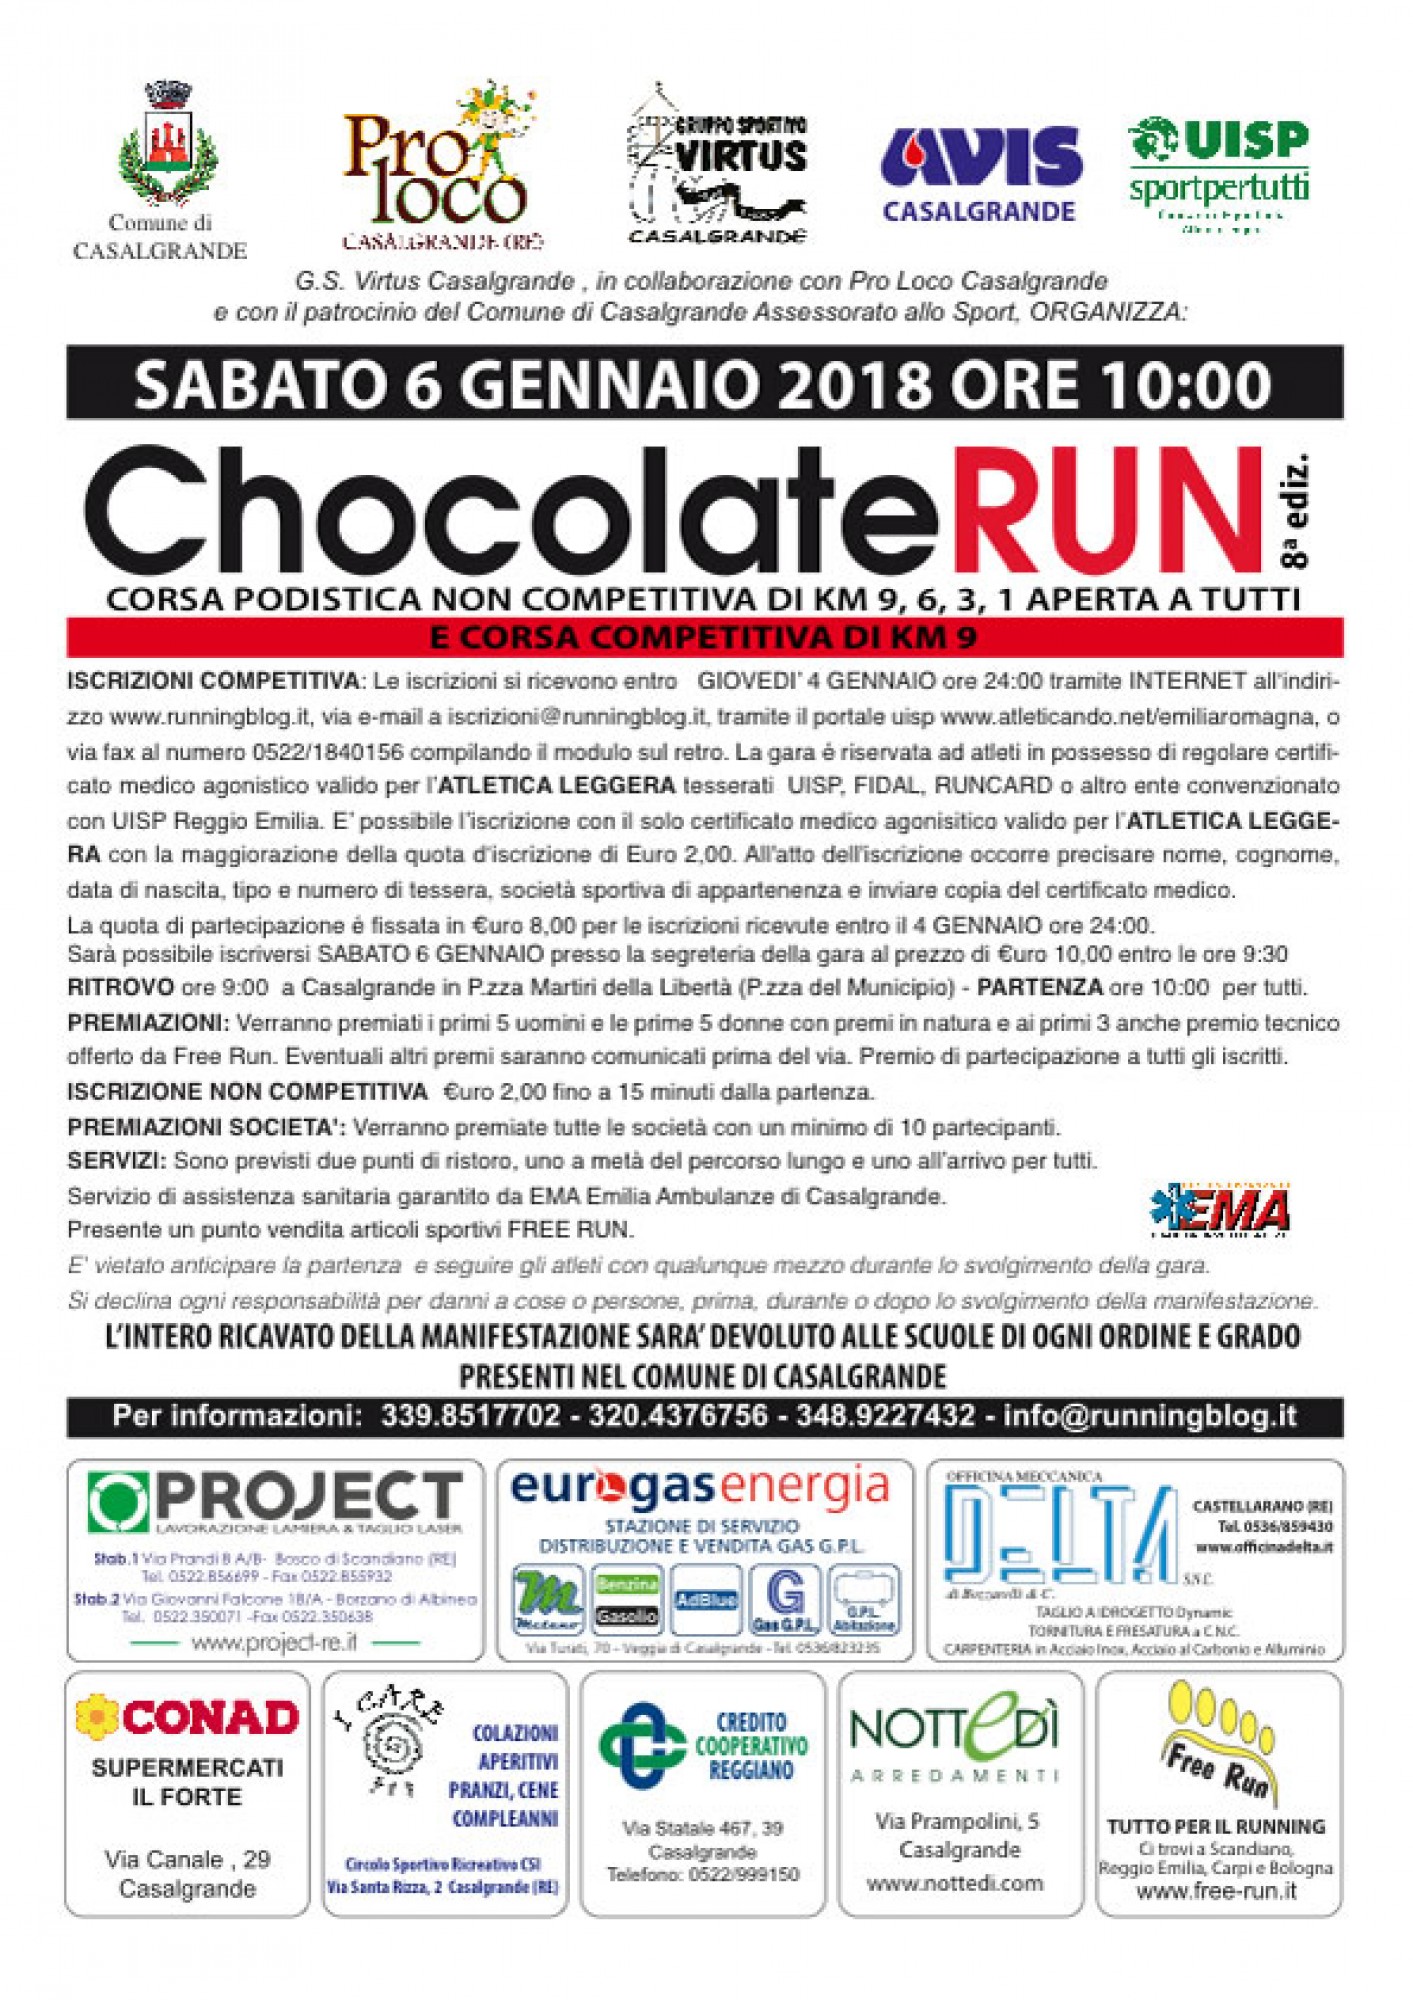 Chocolate Run 2018 